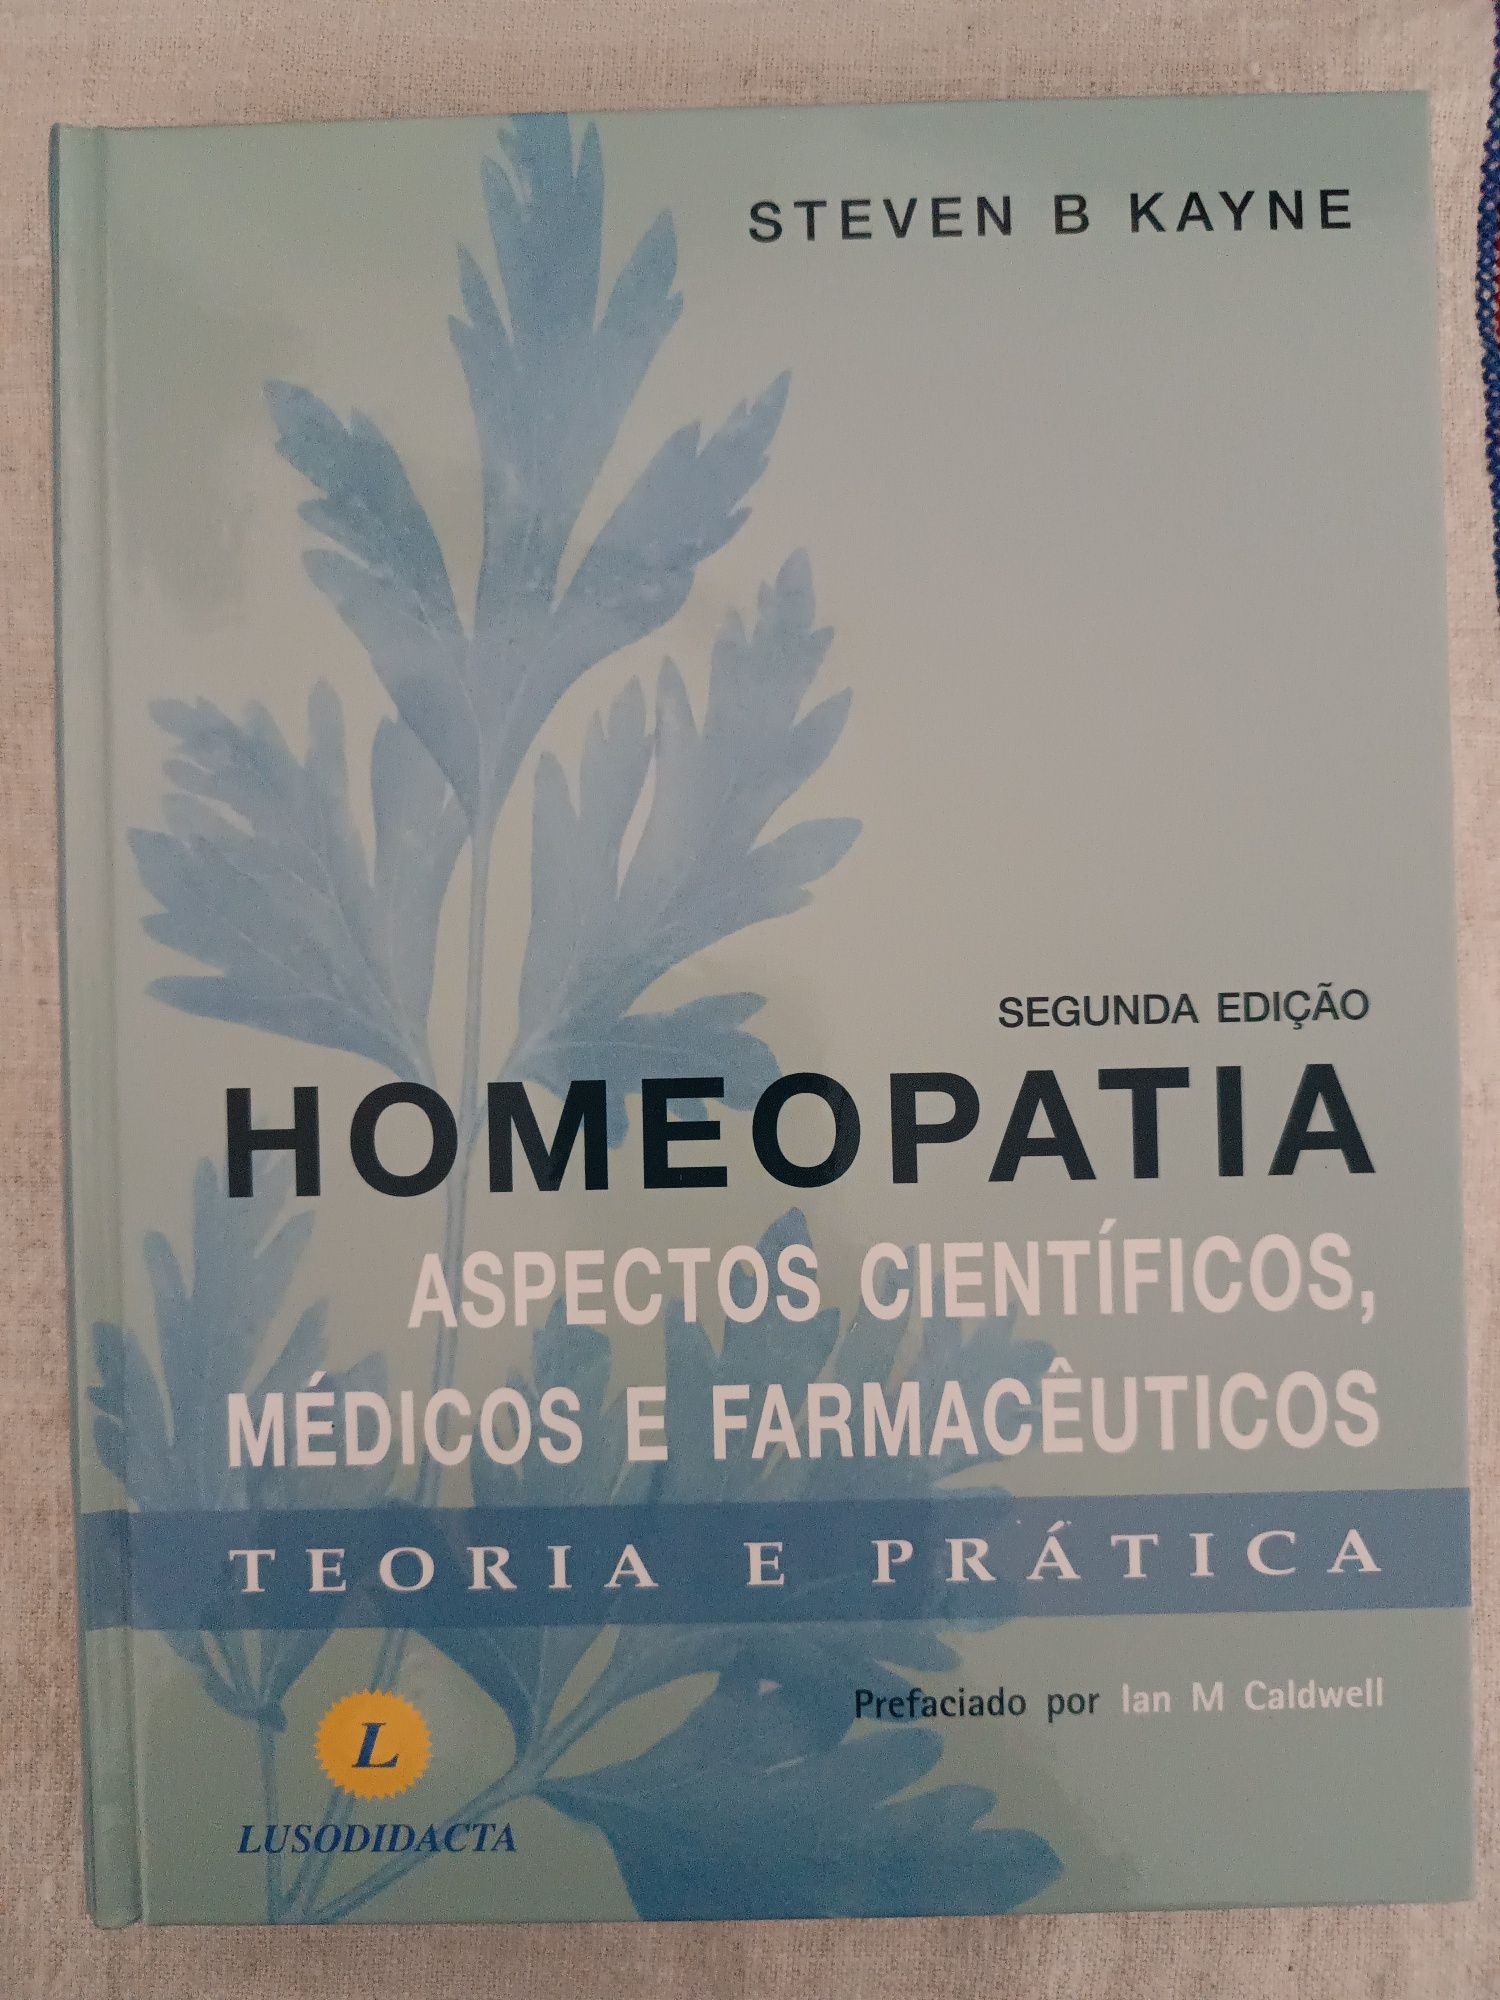 Livro "HOMEOPATIA, Aspectos Científicos, Médicos e Farmacêuticos